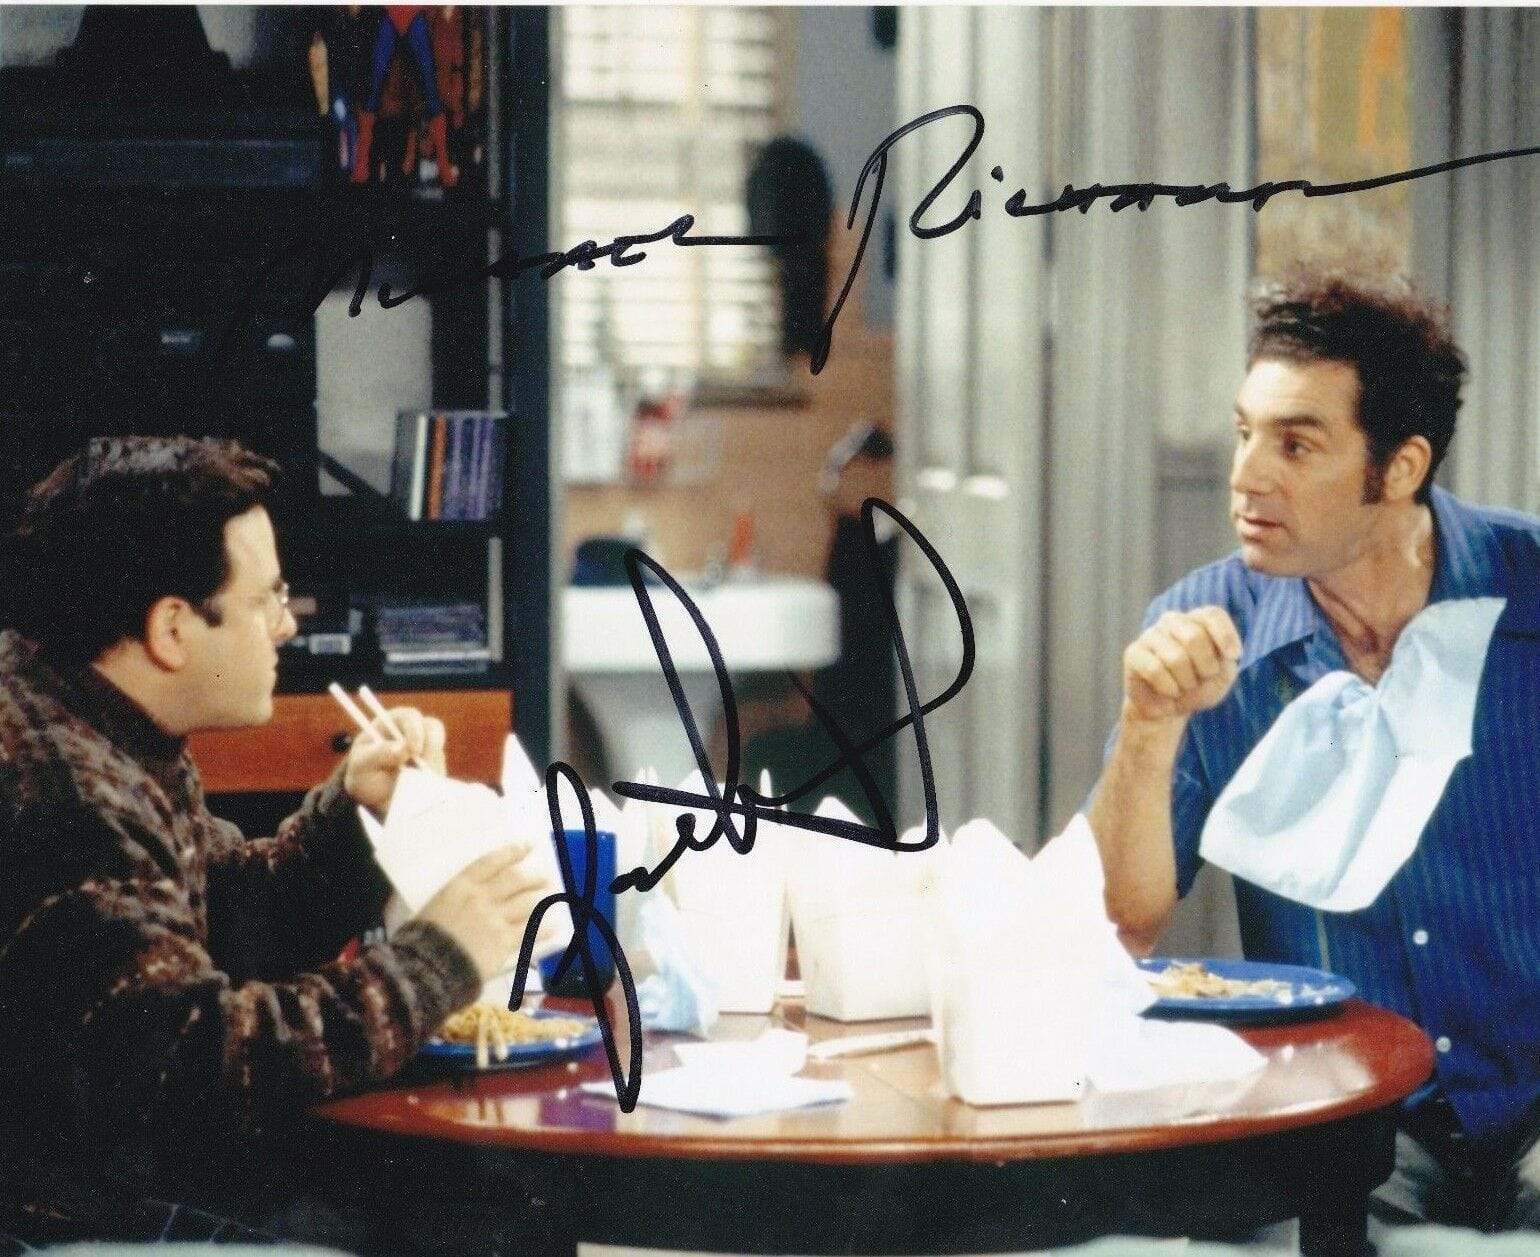 Michael Richards, Jason Alexander Authentic Autographed 8x10 Photo - Prime Time Signatures - TV & Film